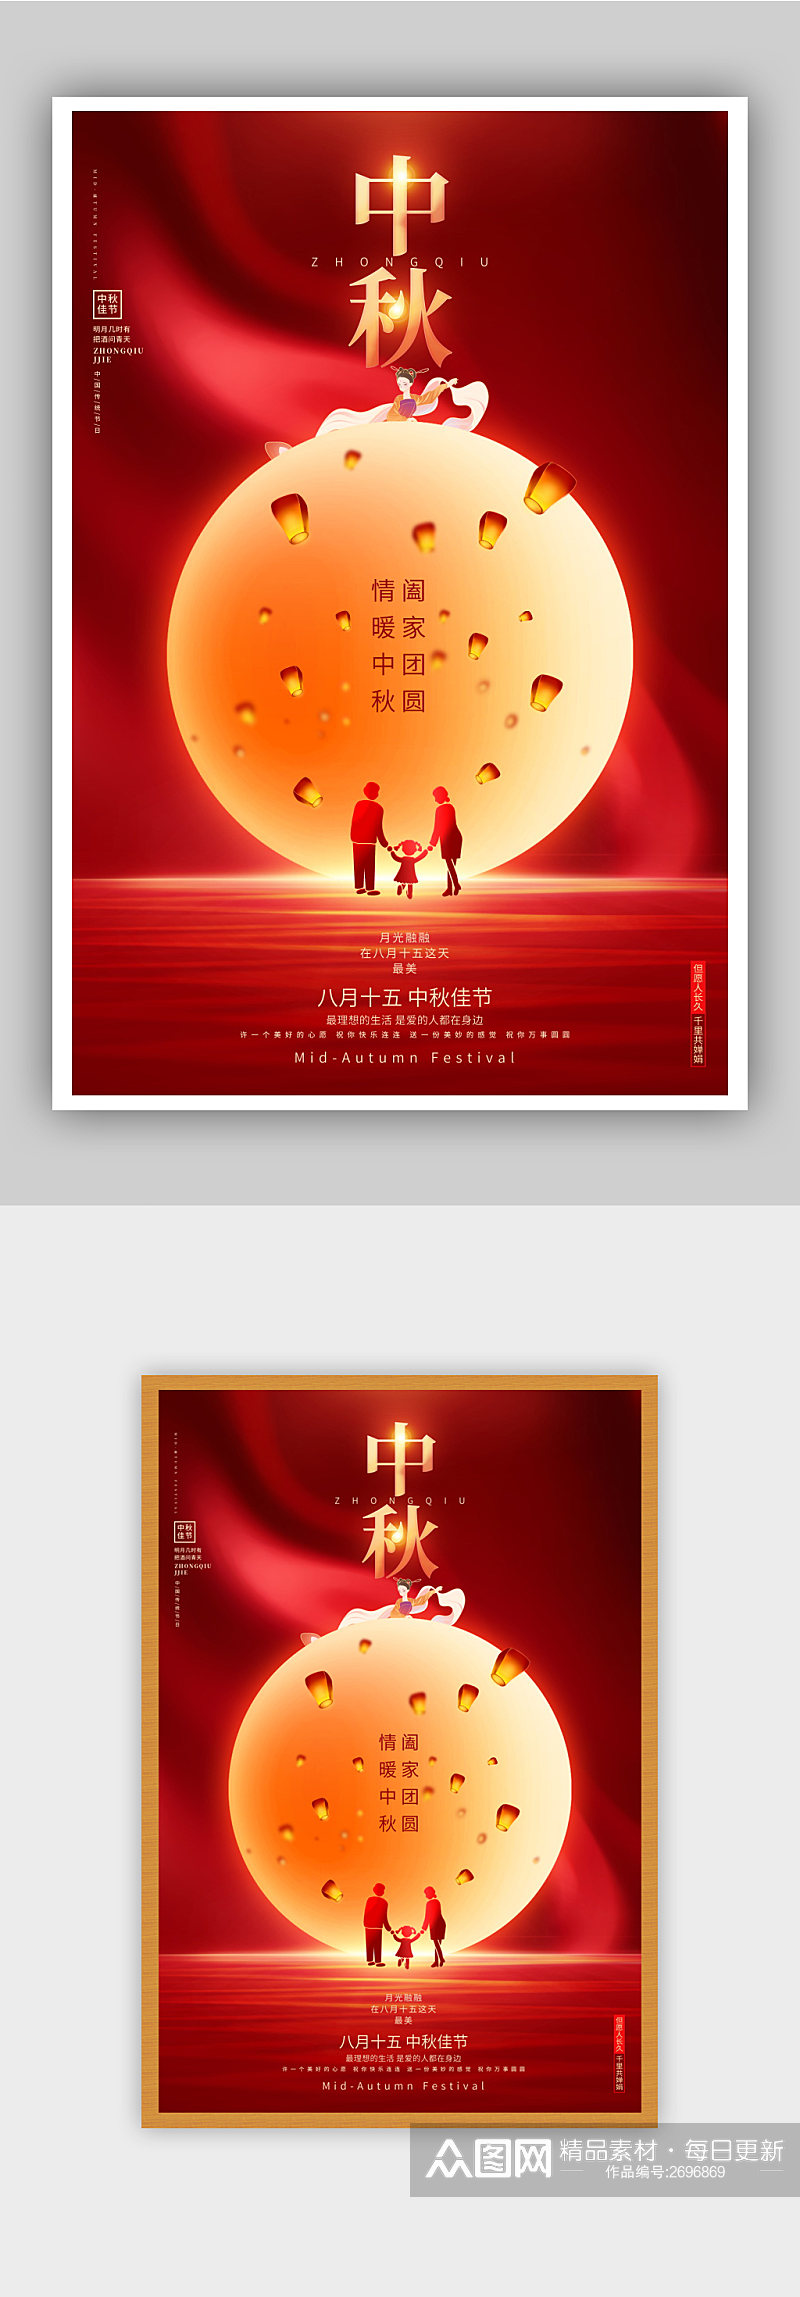 红色创意中秋节中秋佳节宣传海报设计素材